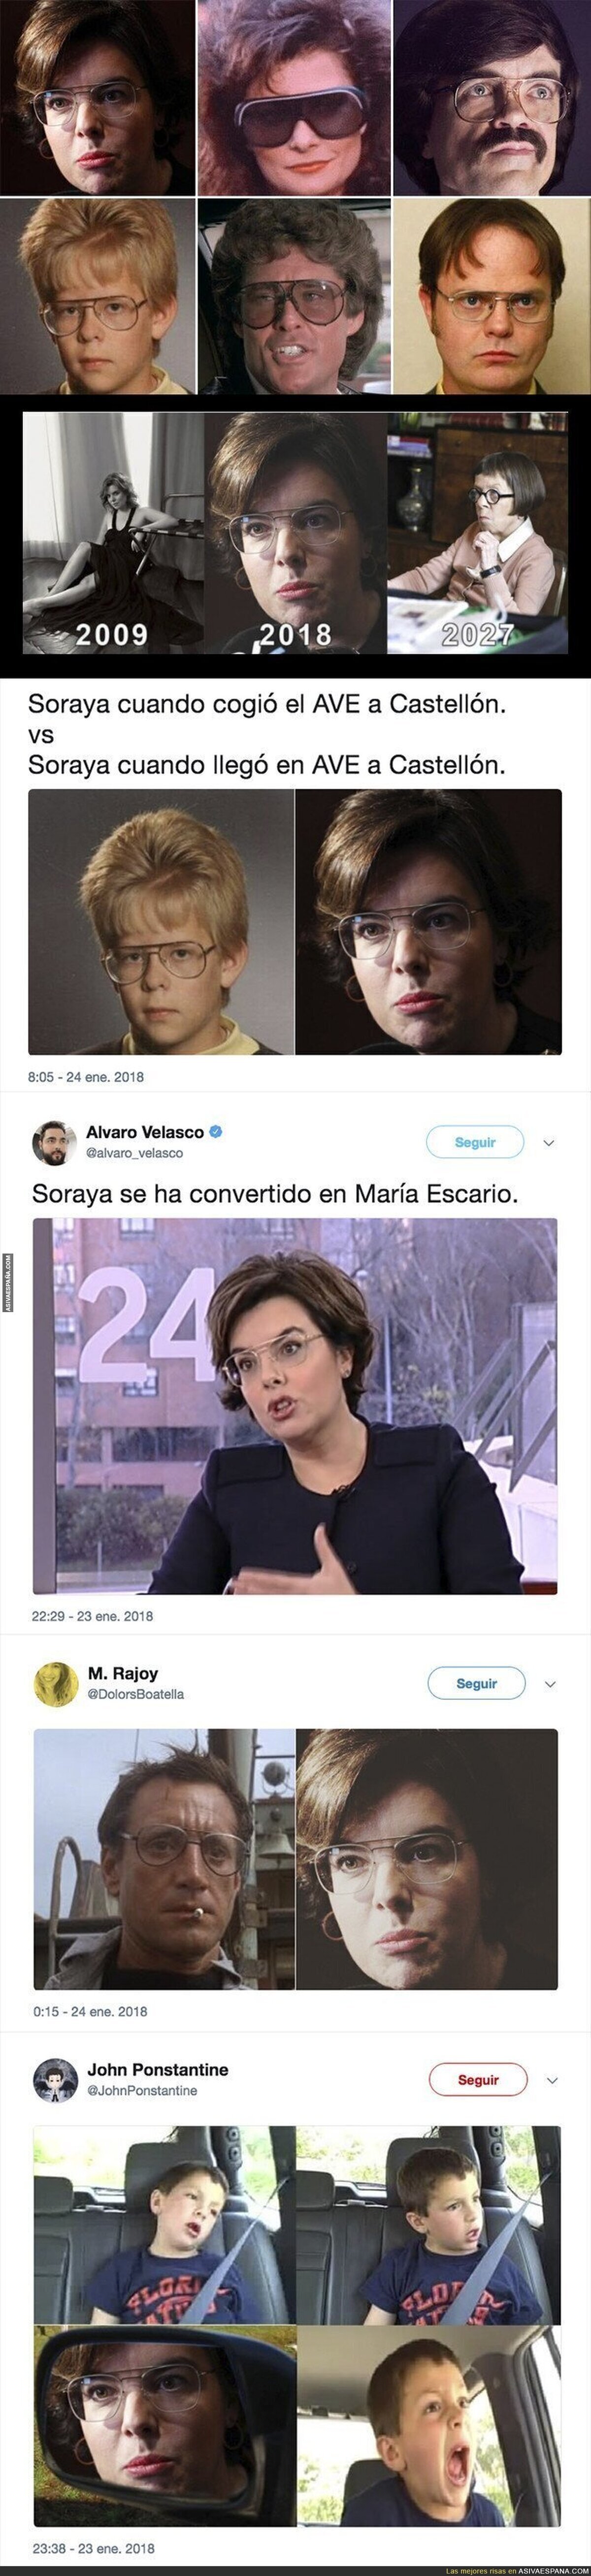 Soraya Sáenz de Santamaría sorprende con su look e internet se llena de memes